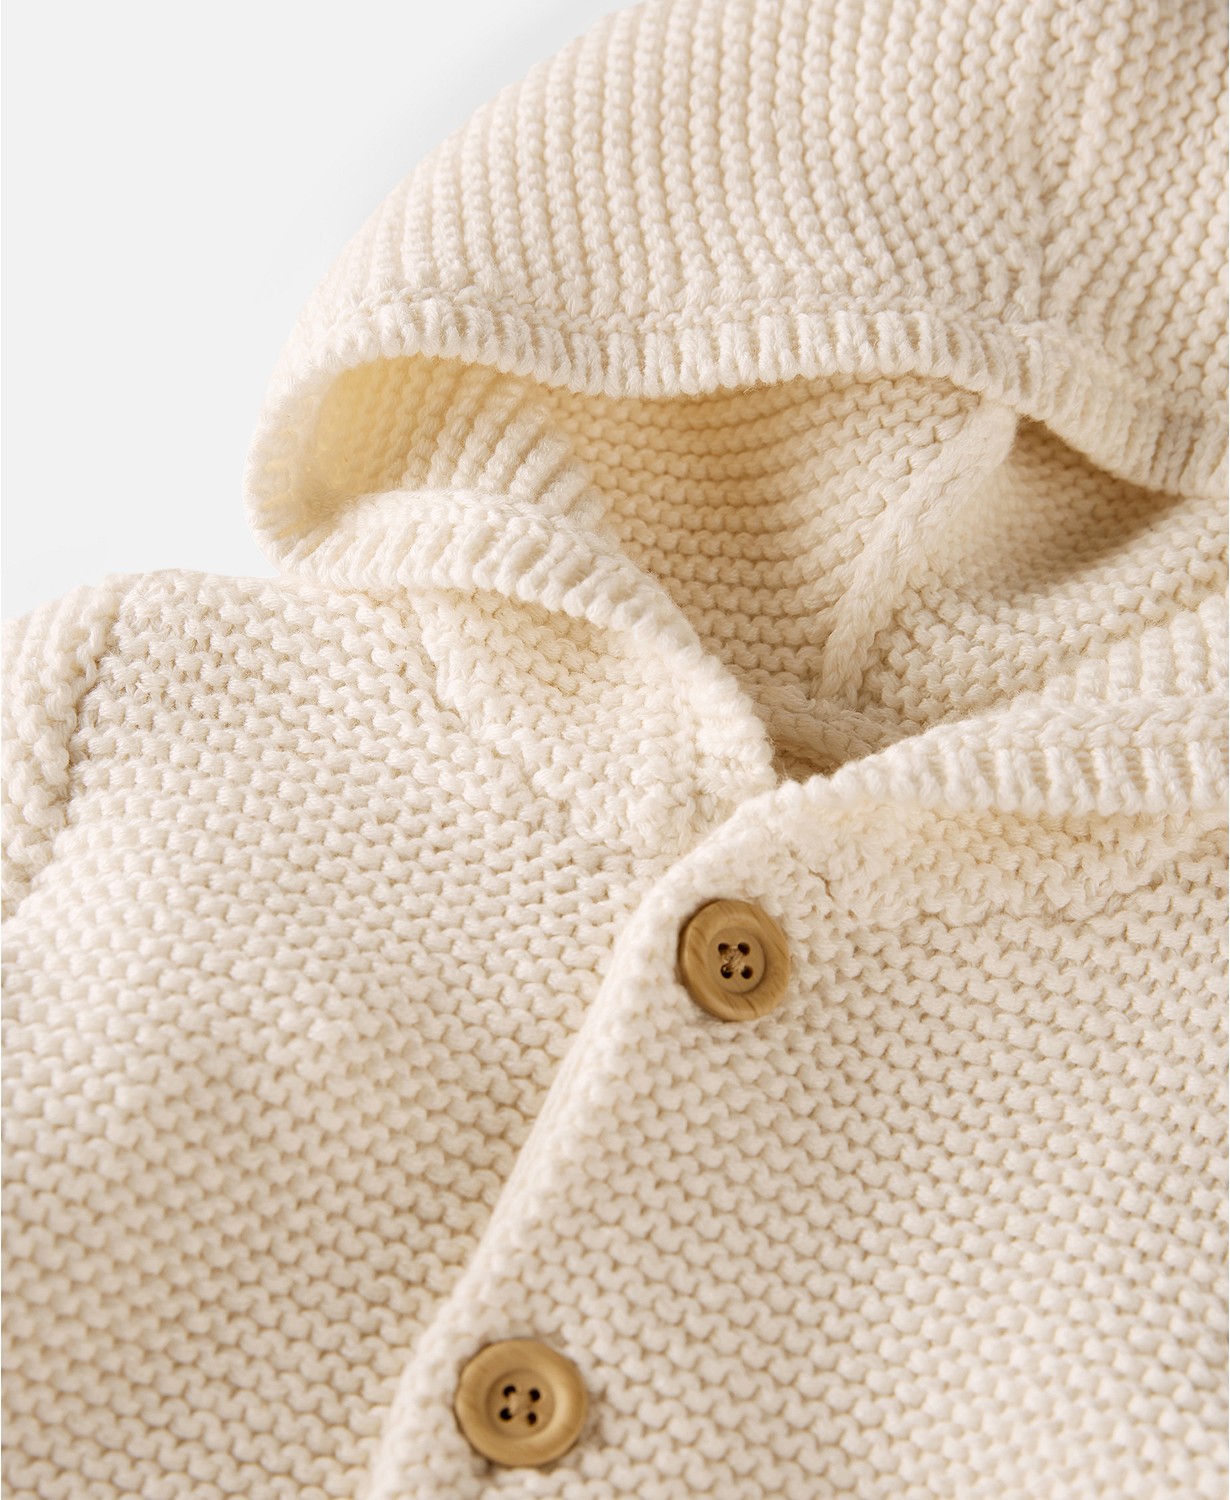 카터스 Baby Boys or Baby Girls Organic Cotton Signature Stitch Cardigan Sweater